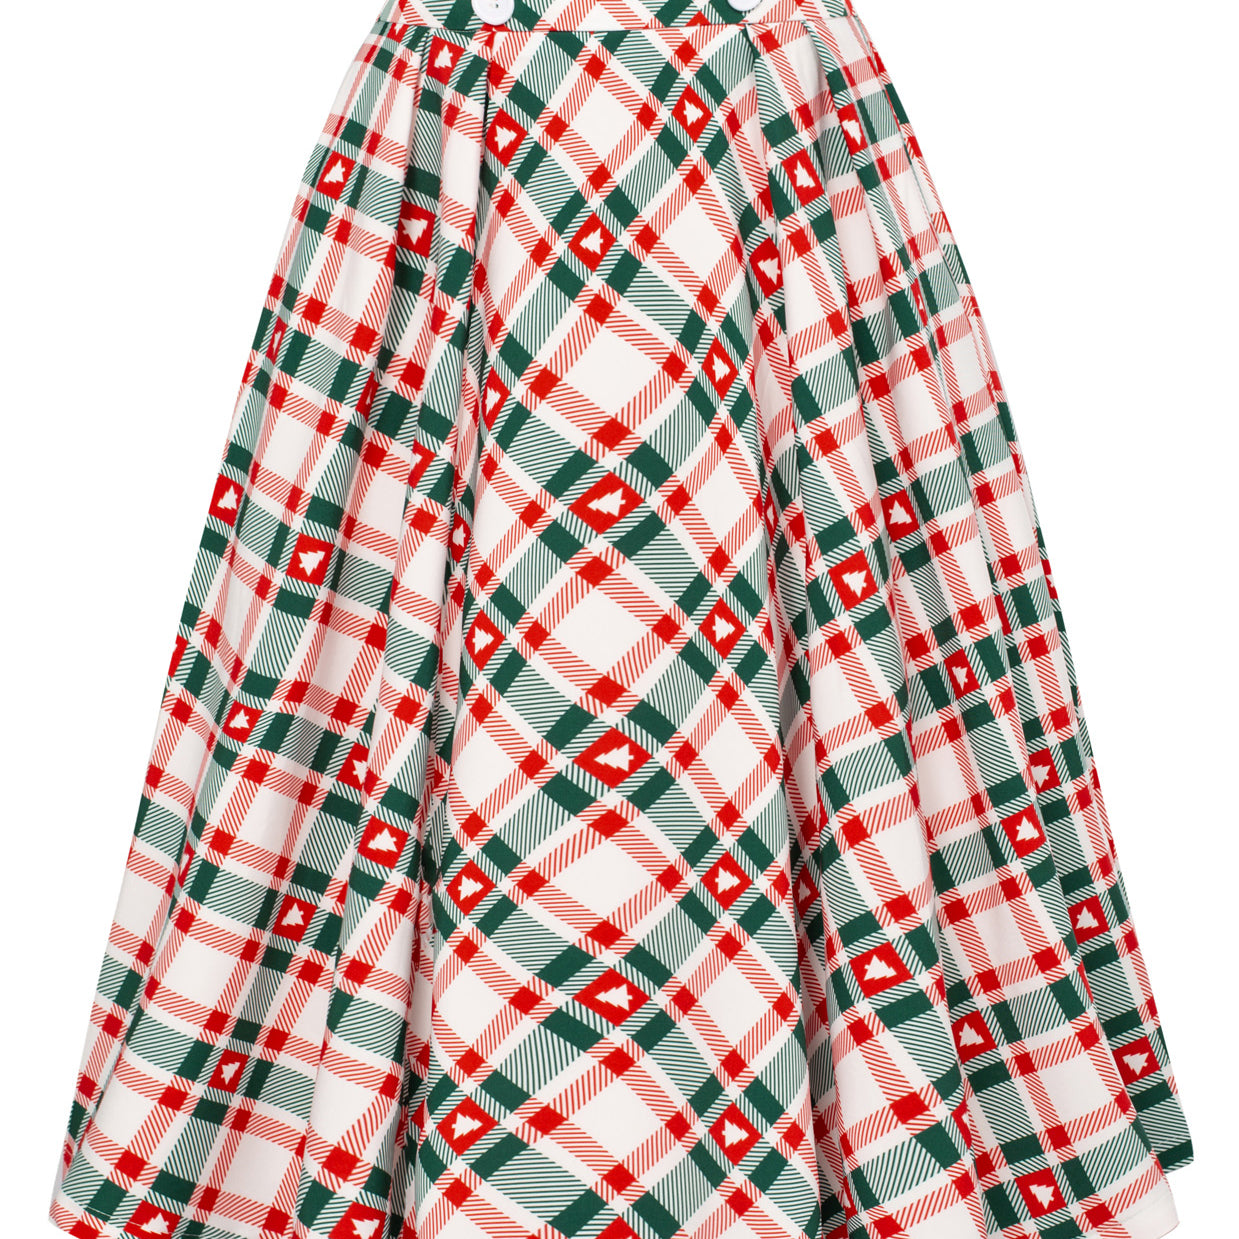 Seckill Offer⌛Buttons Decorated Plaid Patterns Elastic Waist High Waist Swing A-Line Skirt